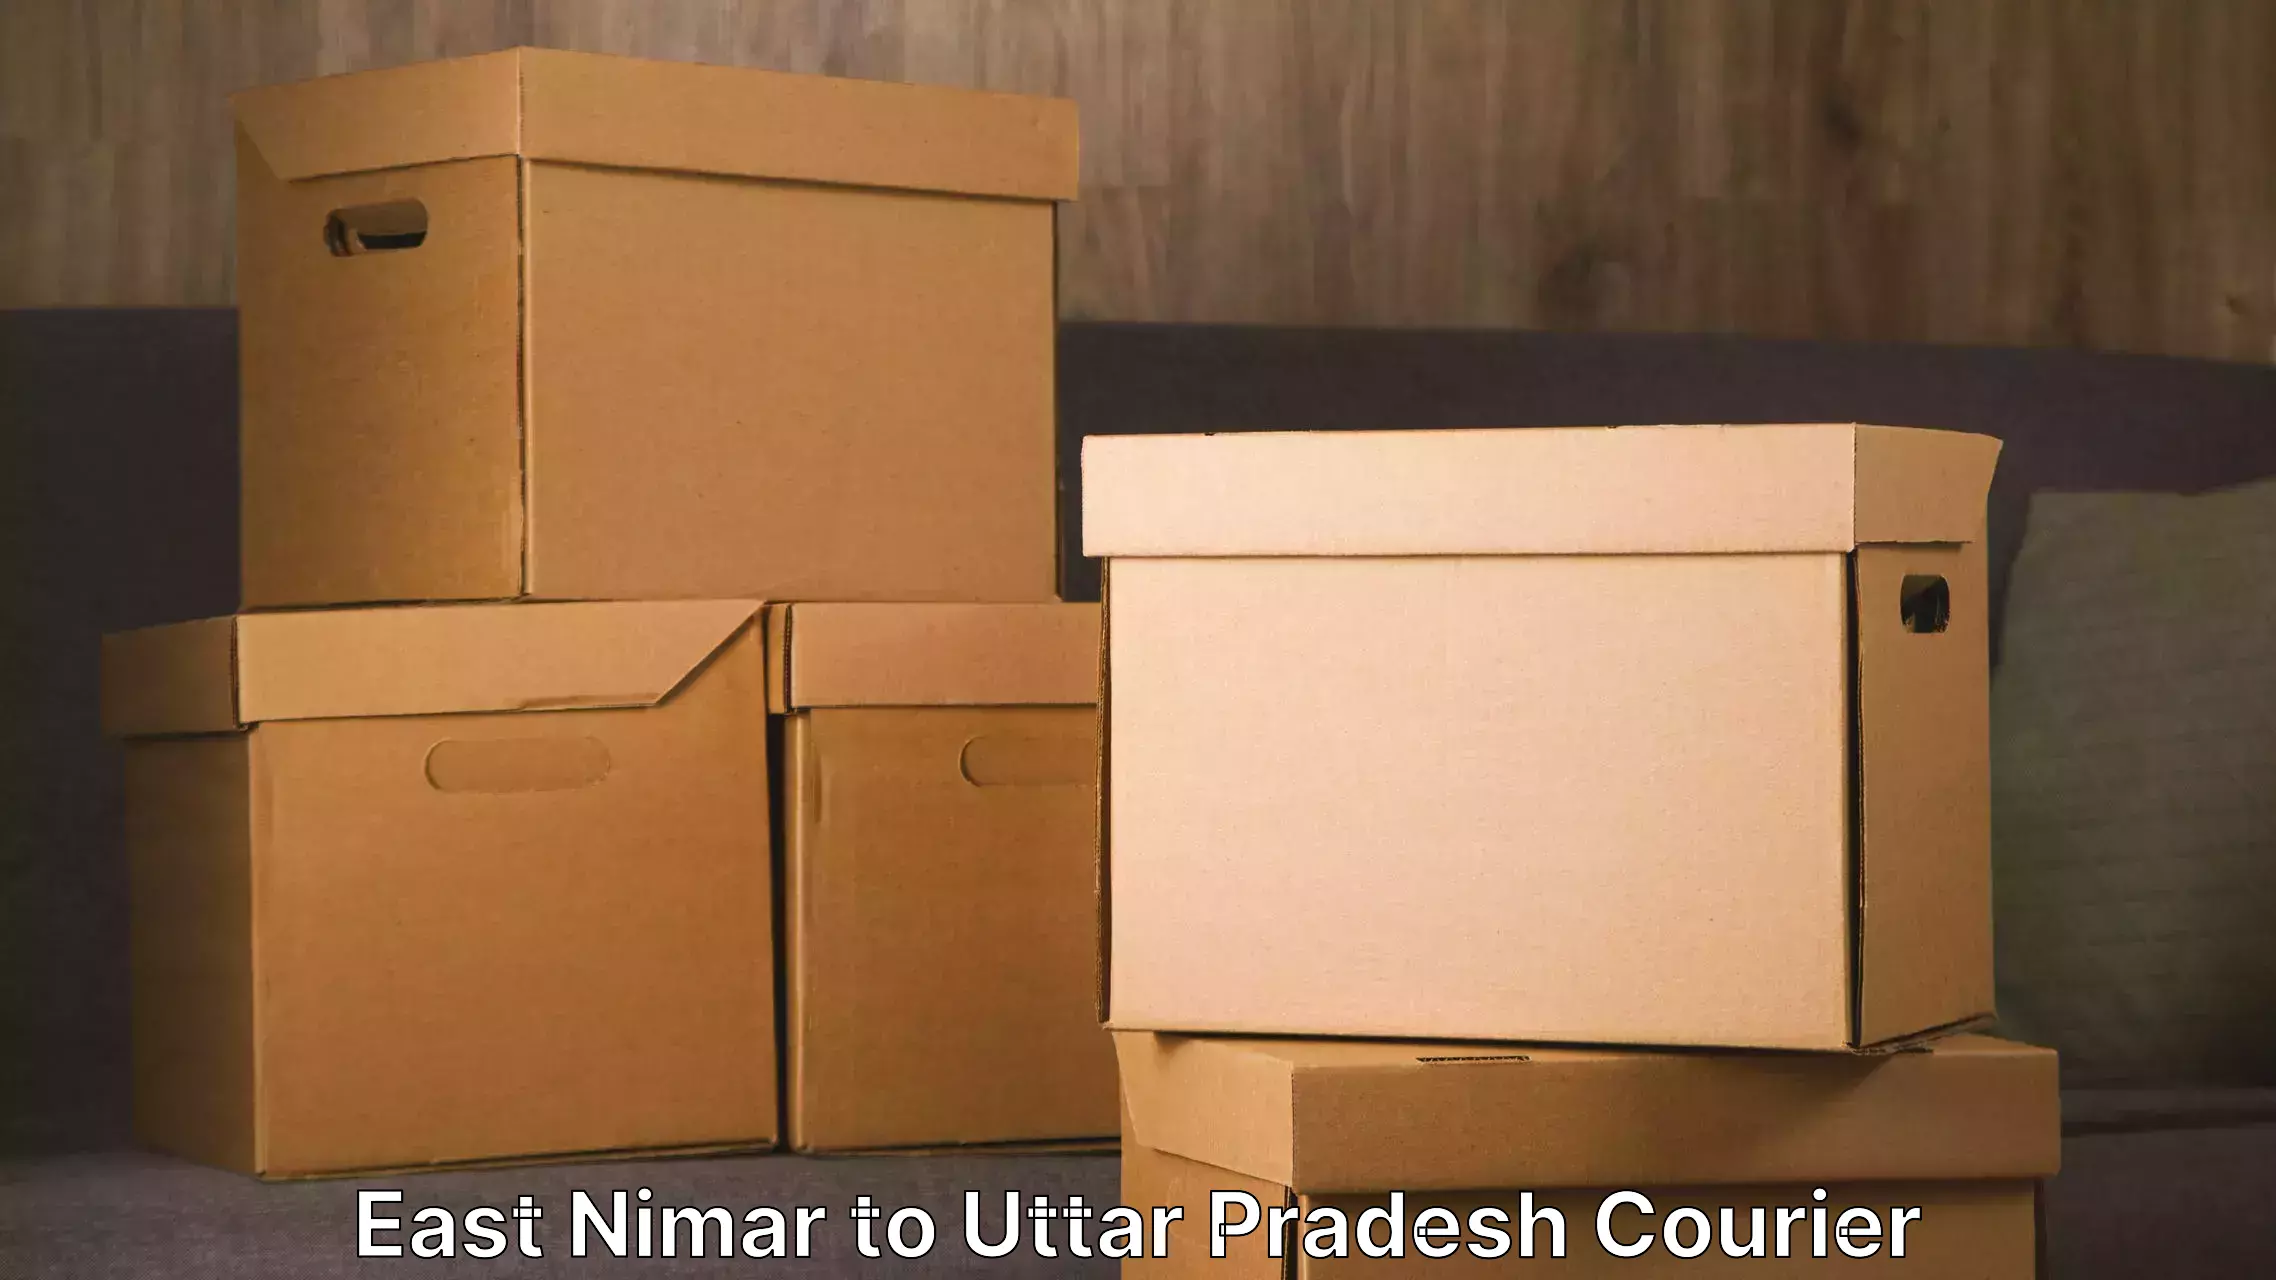 Furniture transport solutions East Nimar to Mungra Badshahpur